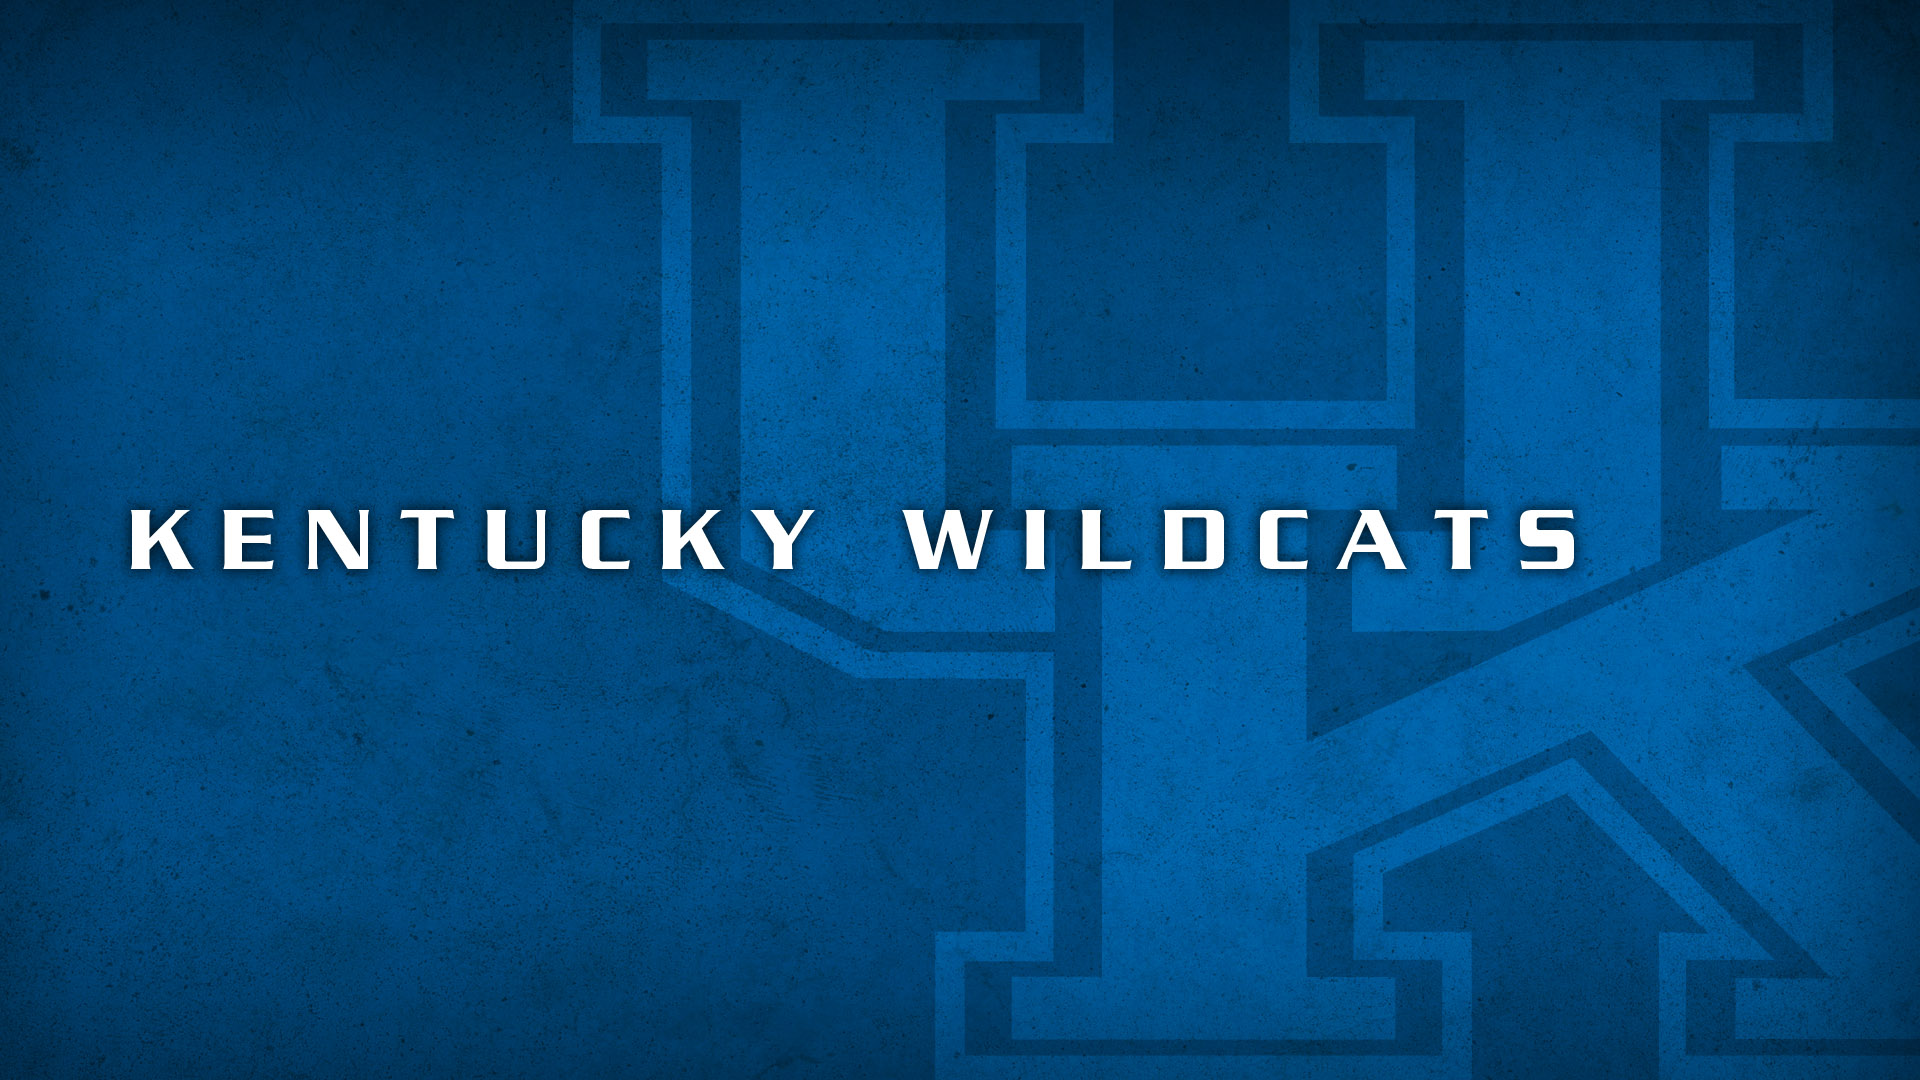 Kentucky Wildcats Basketball Wallpaper Collection 1920x1080